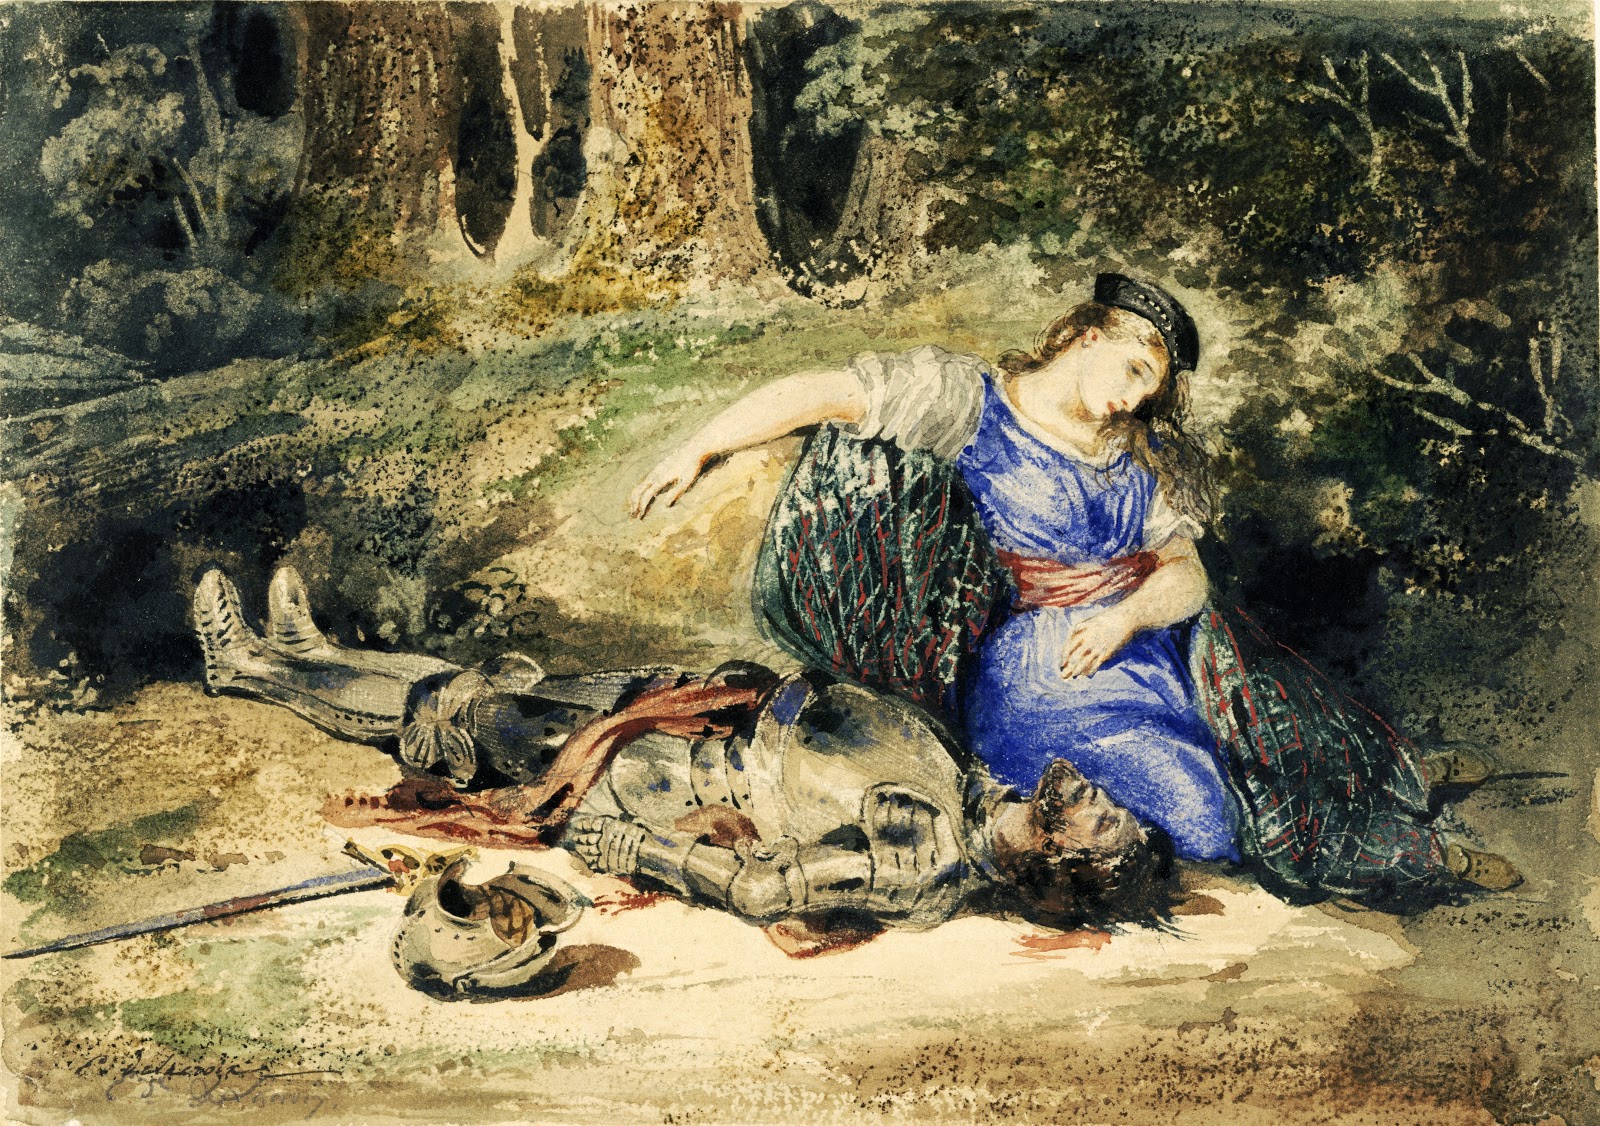 Eugene+Delacroix-1798-1863 (213).jpg